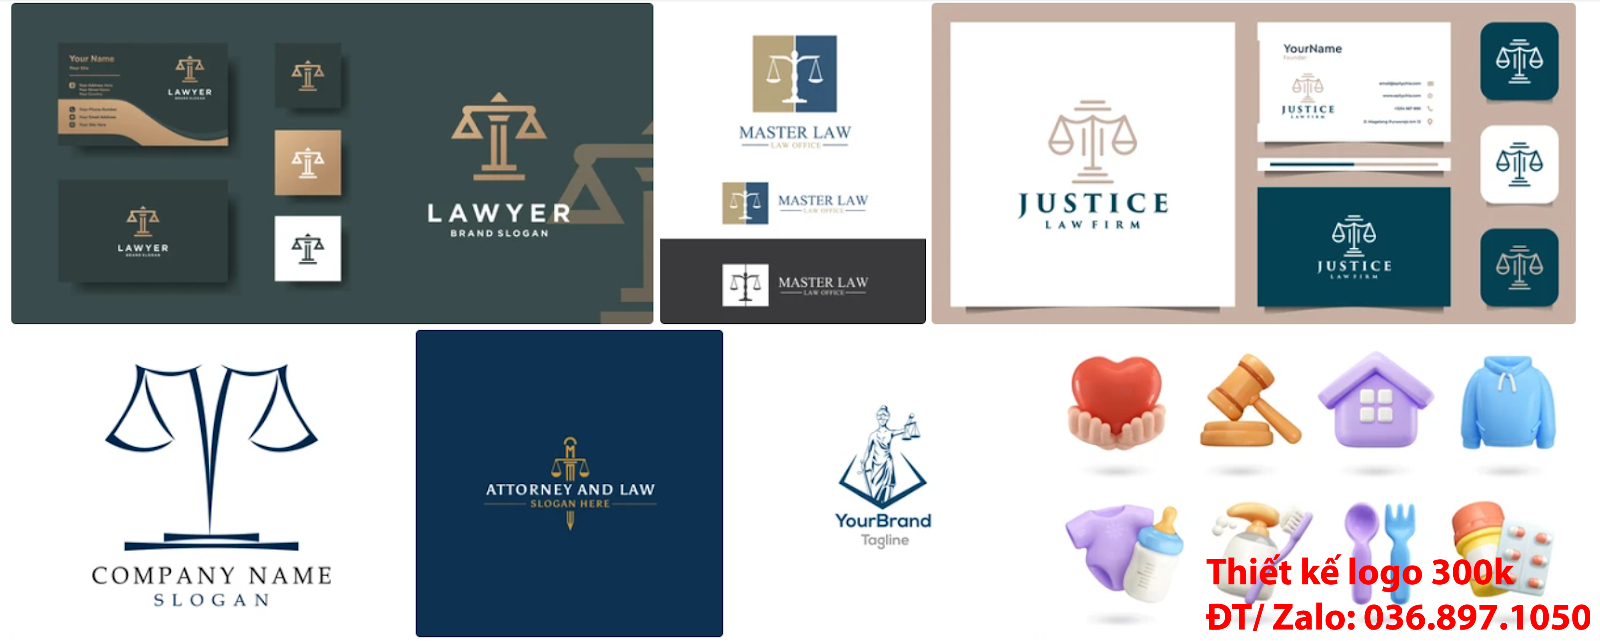 Công ty cung cấp dịch vụ thiết kế  Mẫu logo đẹp công ty luật sư sáng tạo online chất lượng uy tín tại Sài Gòn